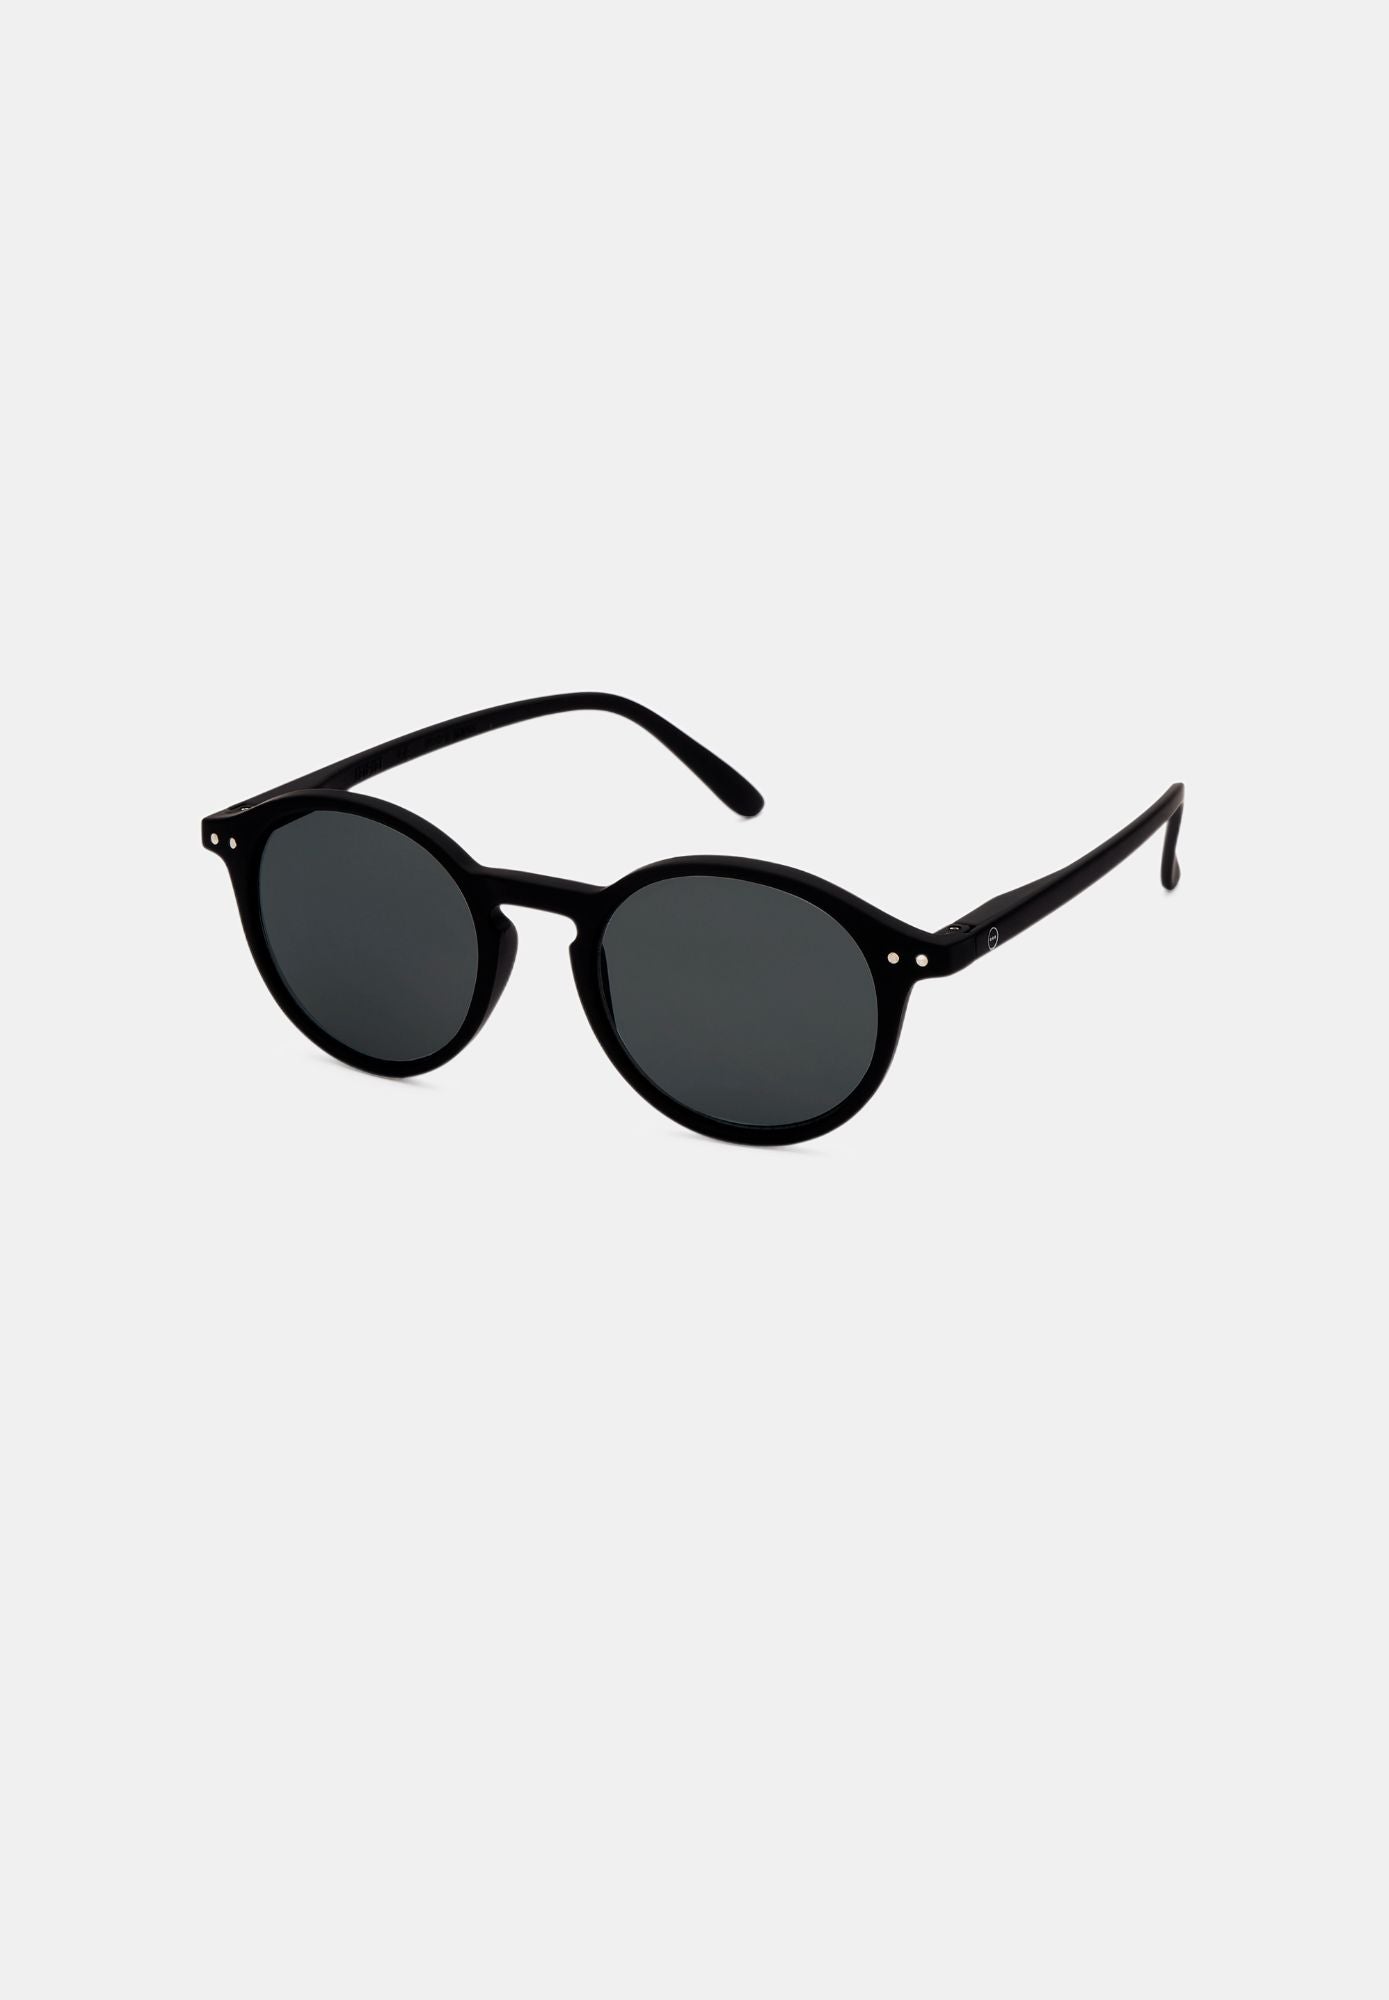 ADULT Glasses #D SUN Black - Izipizi